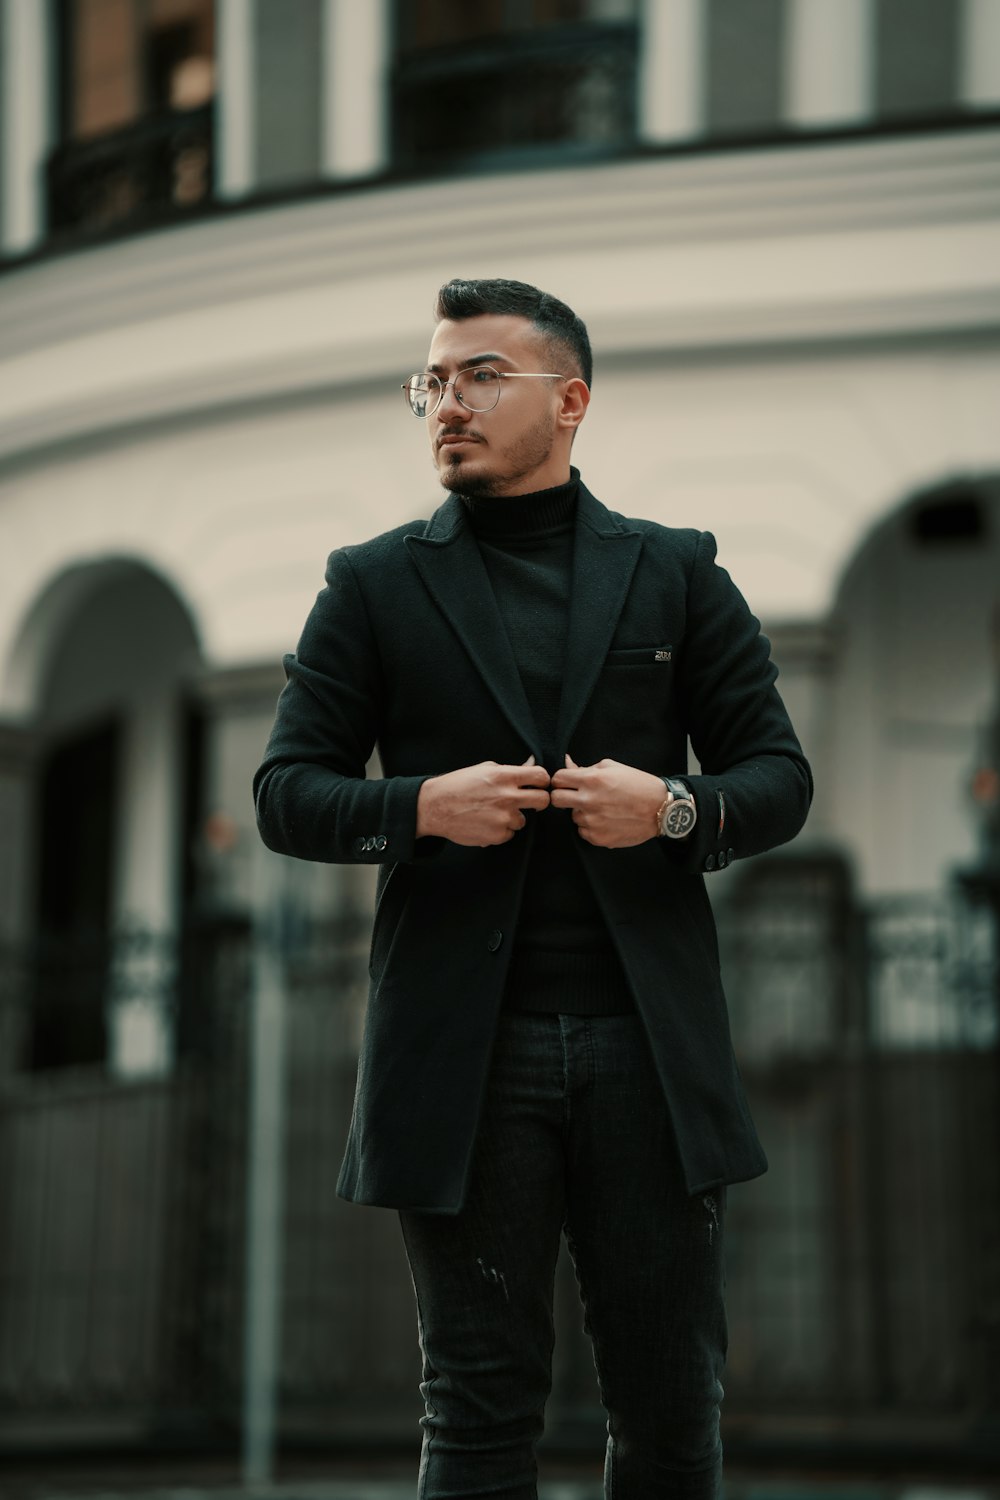 Un uomo con una giacca nera e pantaloni neri foto – Fotografia di strada  Immagine gratuita su Unsplash